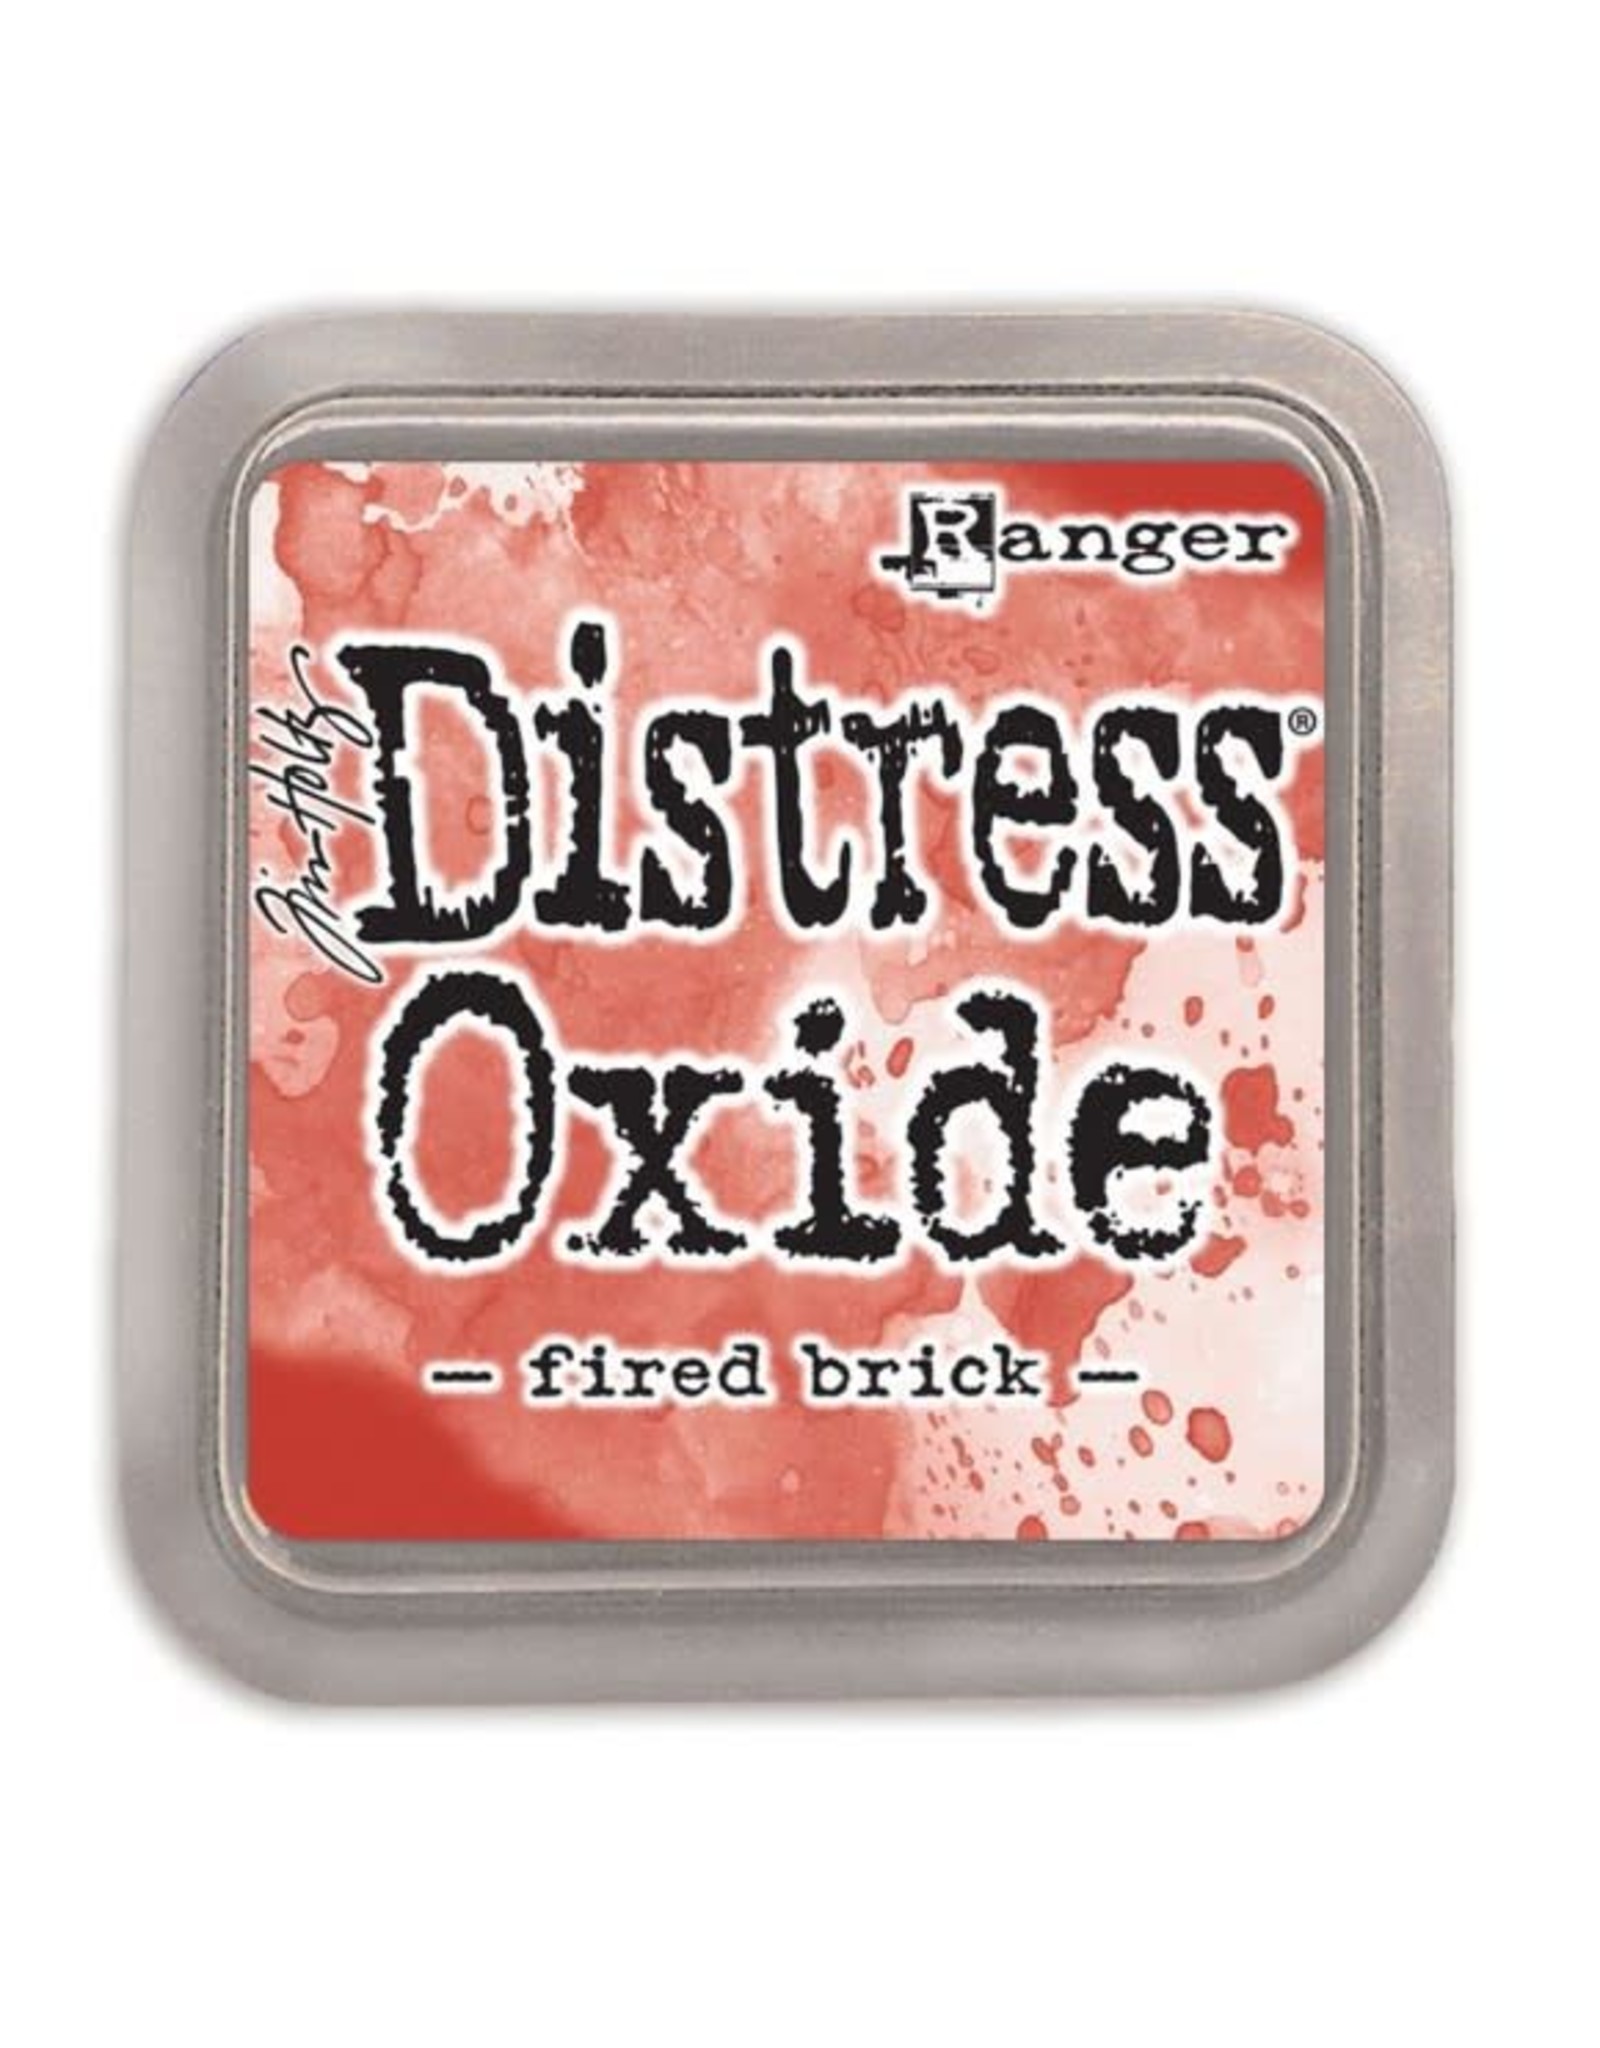 Ranger Ranger Distress Oxide - fired brick